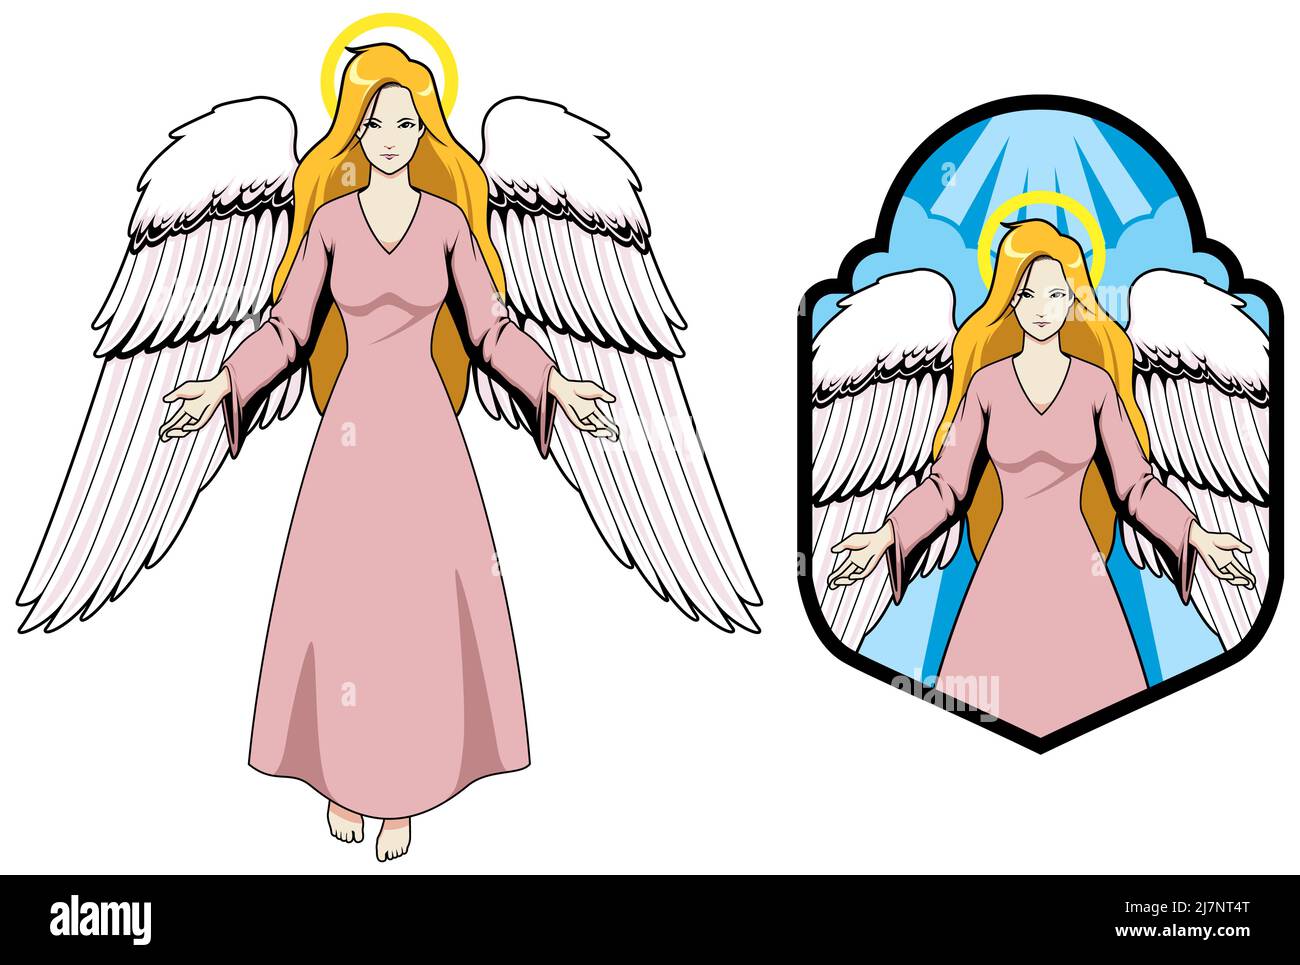 angels mascot cartoon